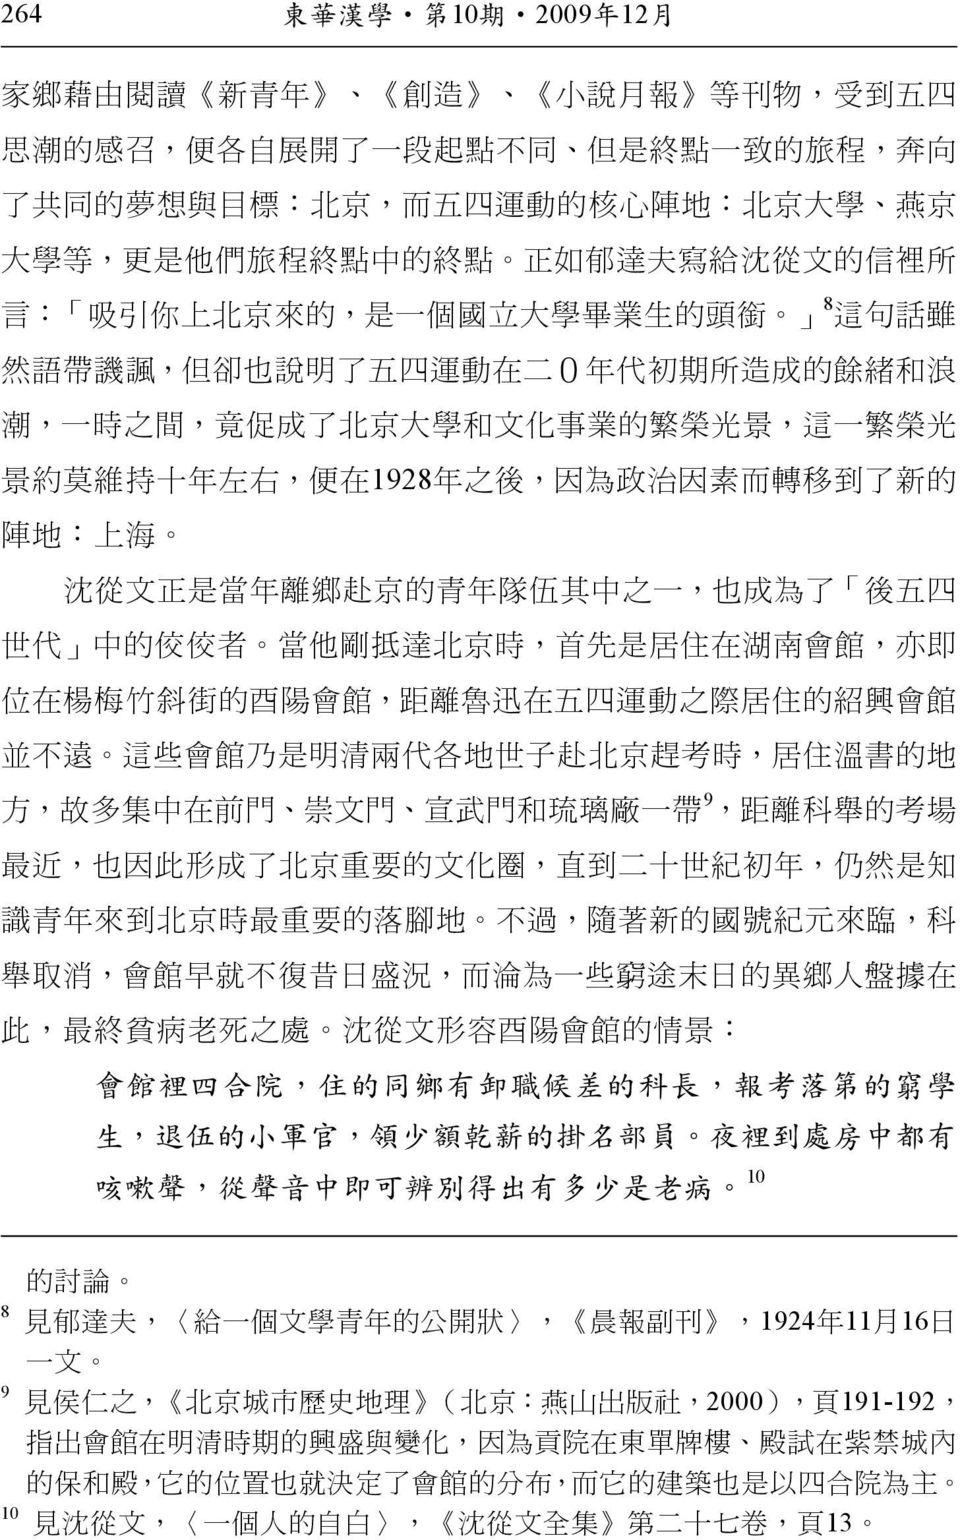 文 化 事 業 的 繁 榮 光 景, 這 一 繁 榮 光 景 約 莫 維 持 十 年 左 右, 便 在 1928 年 之 後, 因 為 政 治 因 素 而 轉 移 到 了 新 的 陣 地 : 上 海 沈 從 文 正 是 當 年 離 鄉 赴 京 的 青 年 隊 伍 其 中 之 一, 也 成 為 了 後 五 四 世 代 中 的 佼 佼 者 當 他 剛 抵 達 北 京 時, 首 先 是 居 住 在 湖